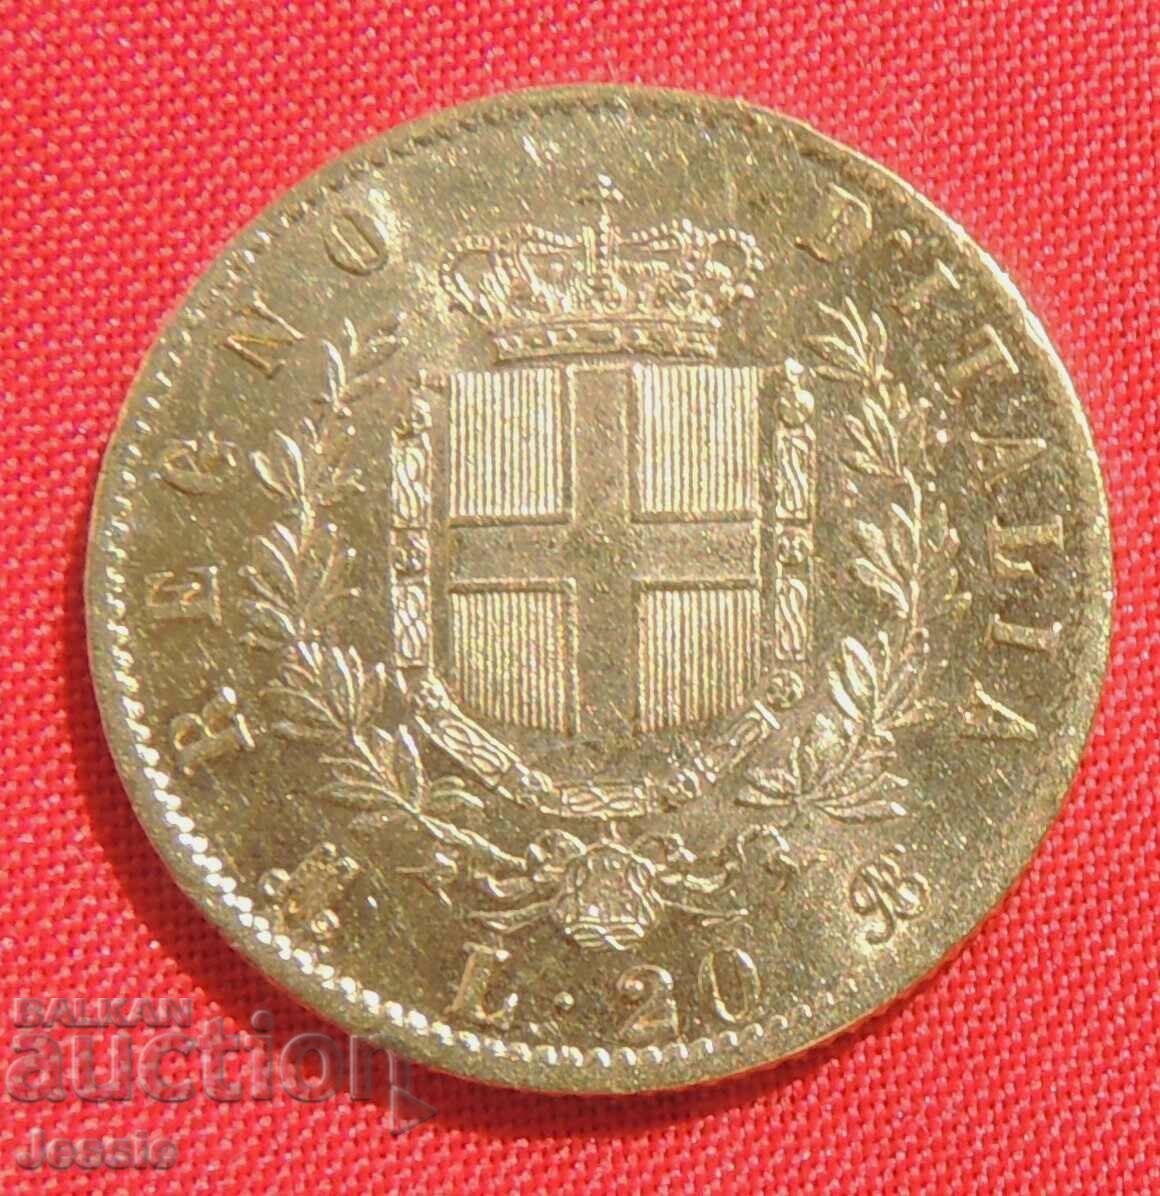 20 Lire 1873 Italy (20 Lire Italy) (gold)